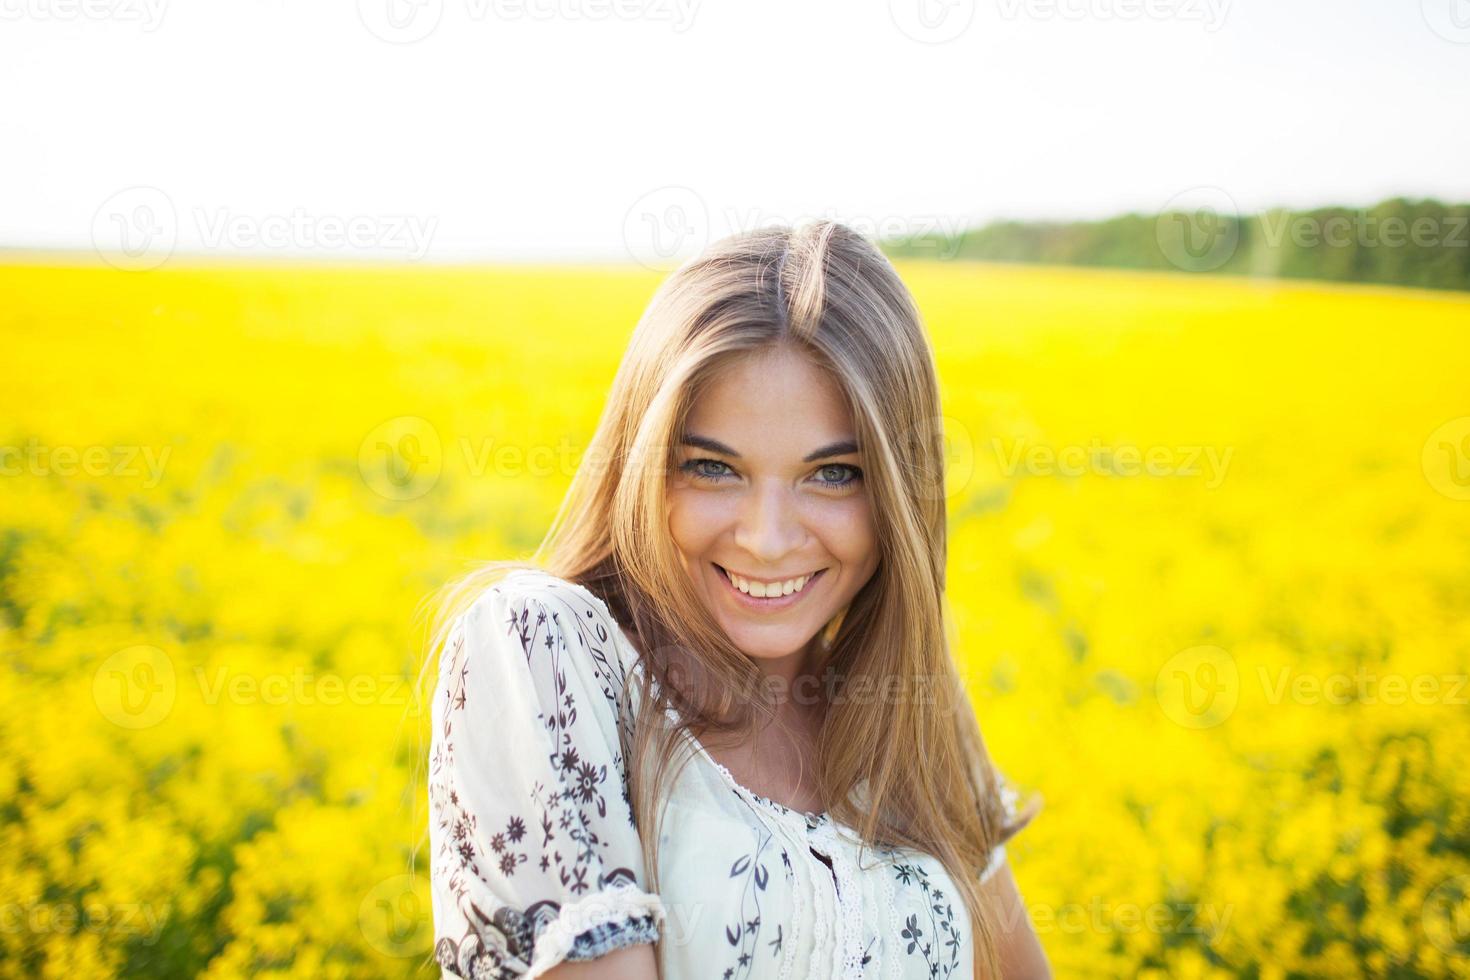 Retrato De Una Hermosa Niña En La Camiseta Amarilla. Mujer Que Sonríe.  Aislado En Blanco. Fotos, retratos, imágenes y fotografía de archivo libres  de derecho. Image 45164383